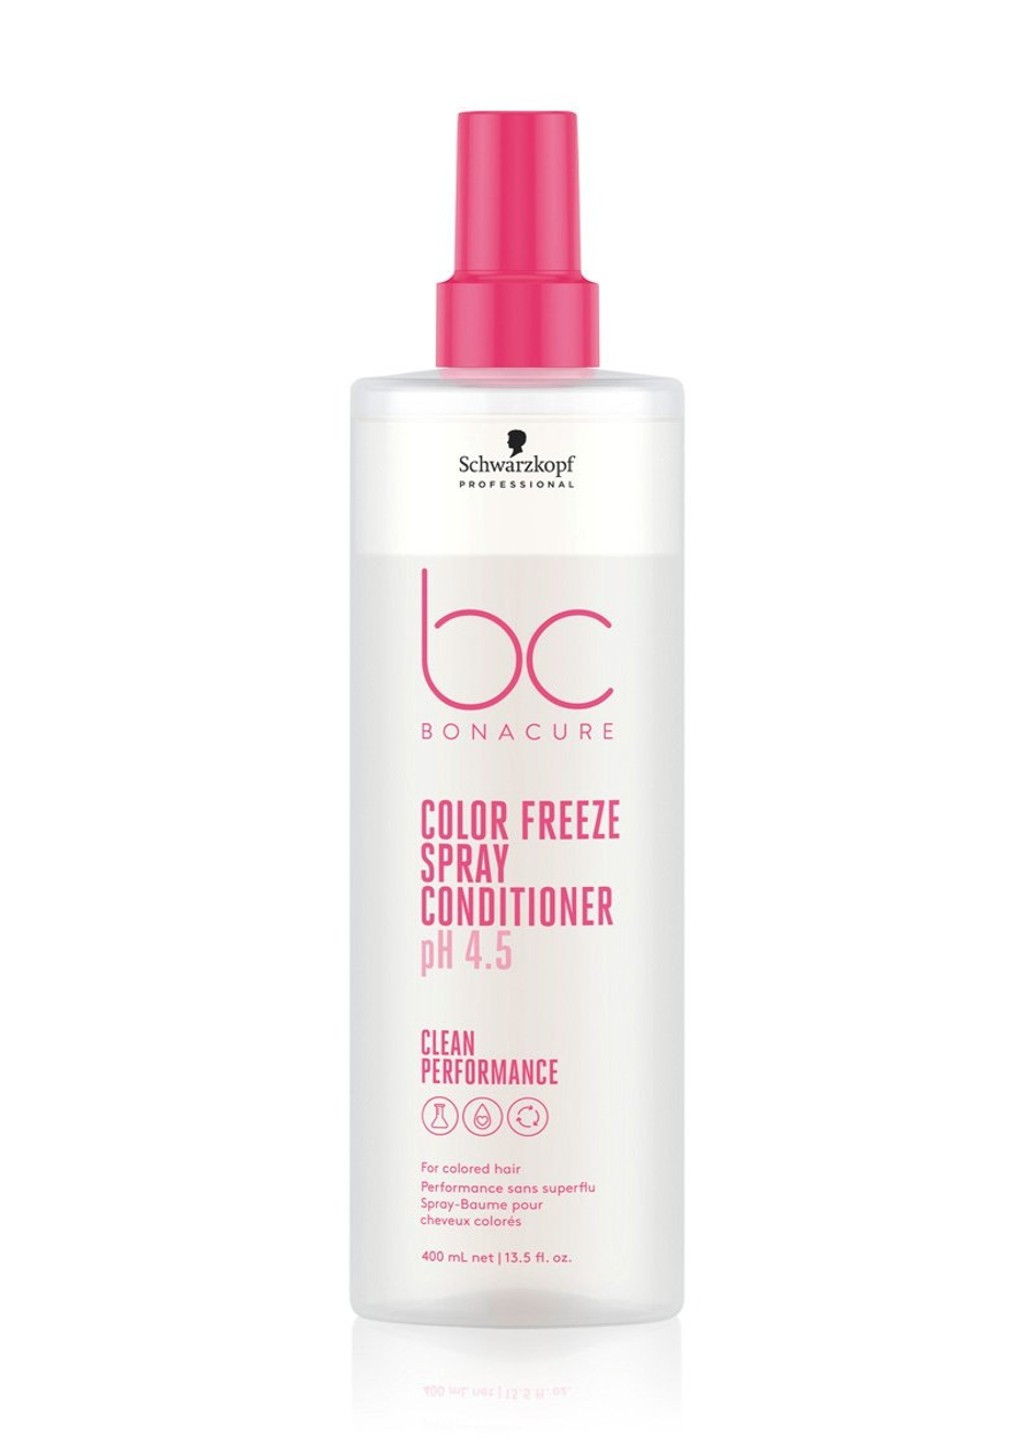 Спрей-кондиционер BC Bonacure Color Freeze Spray Conditioner pH 4.5 для окрашенных волос 400 мл Schwarzkopf (264920289)